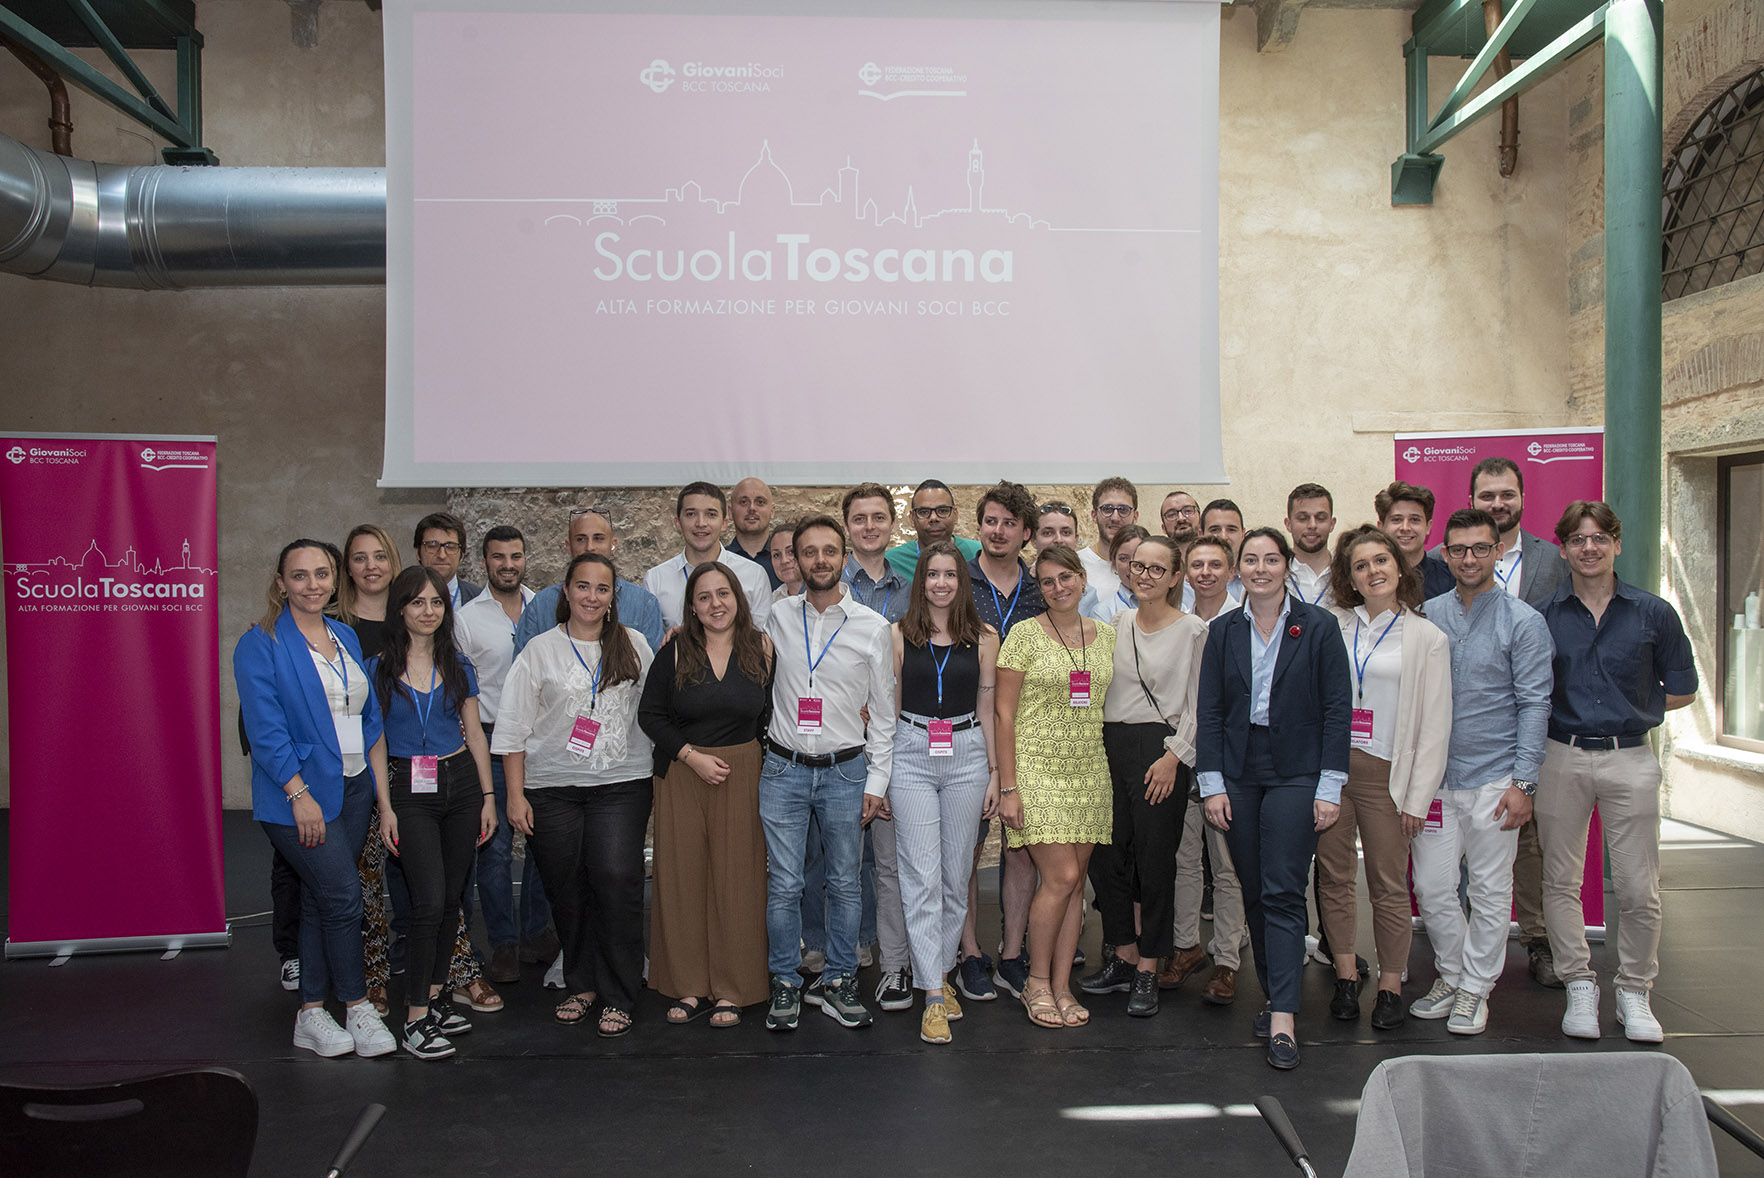 Featured image for “La Scuola Toscana: formazione tecnica per i giovani soci BCC”